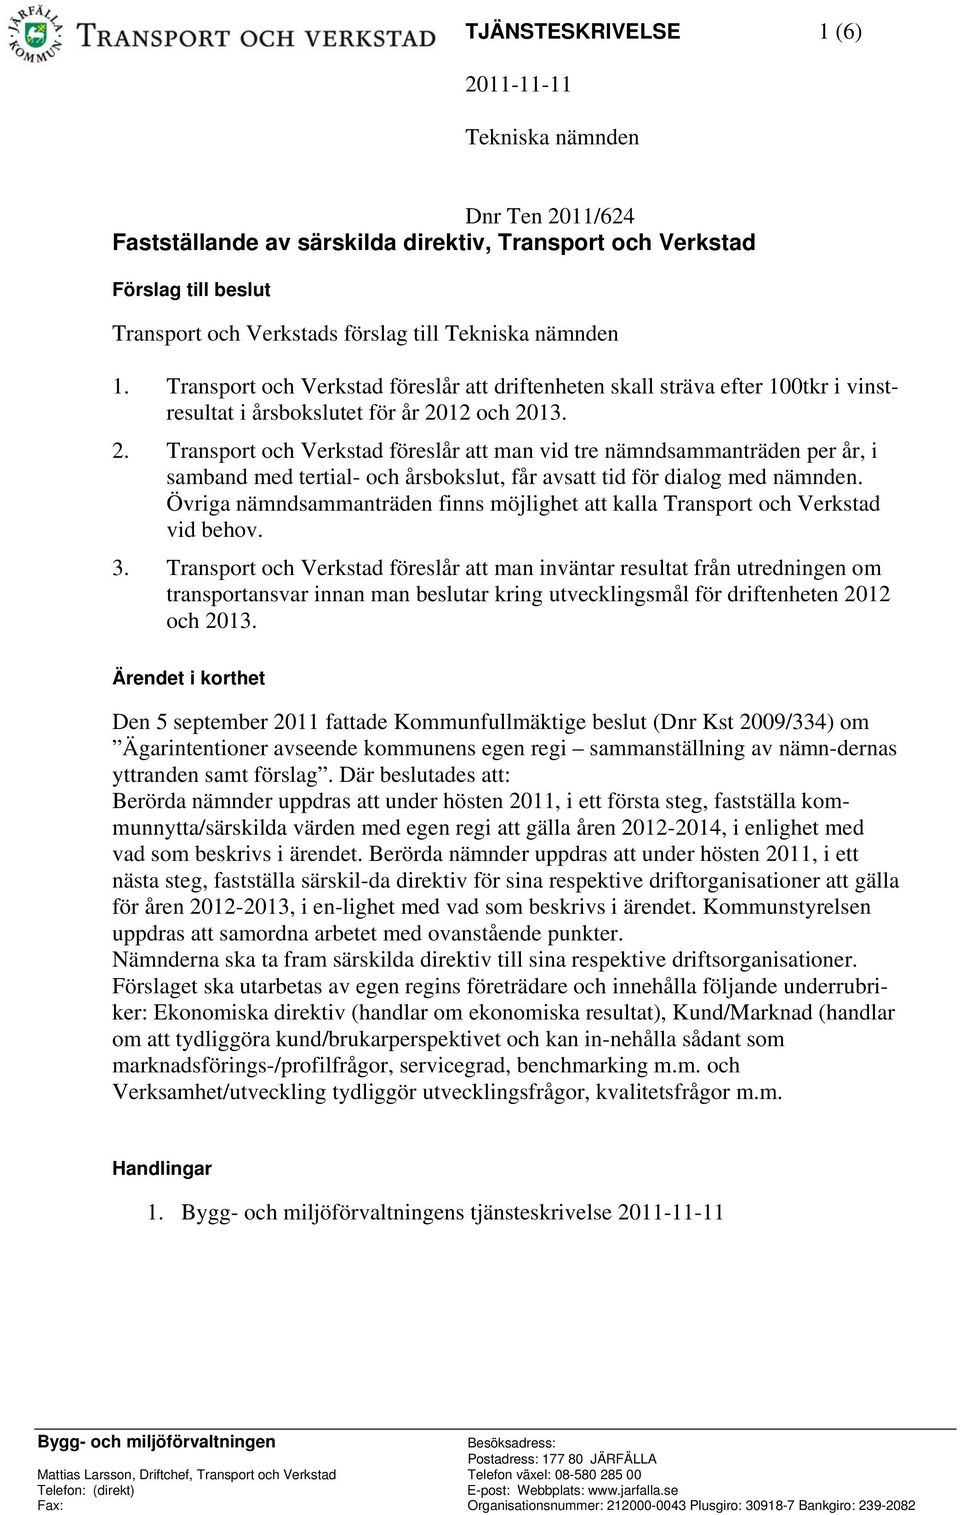 12 och 2013. 2. Transport och Verkstad föreslår att man vid tre nämndsammanträden per år, i samband med tertial- och årsbokslut, får avsatt tid för dialog med nämnden.